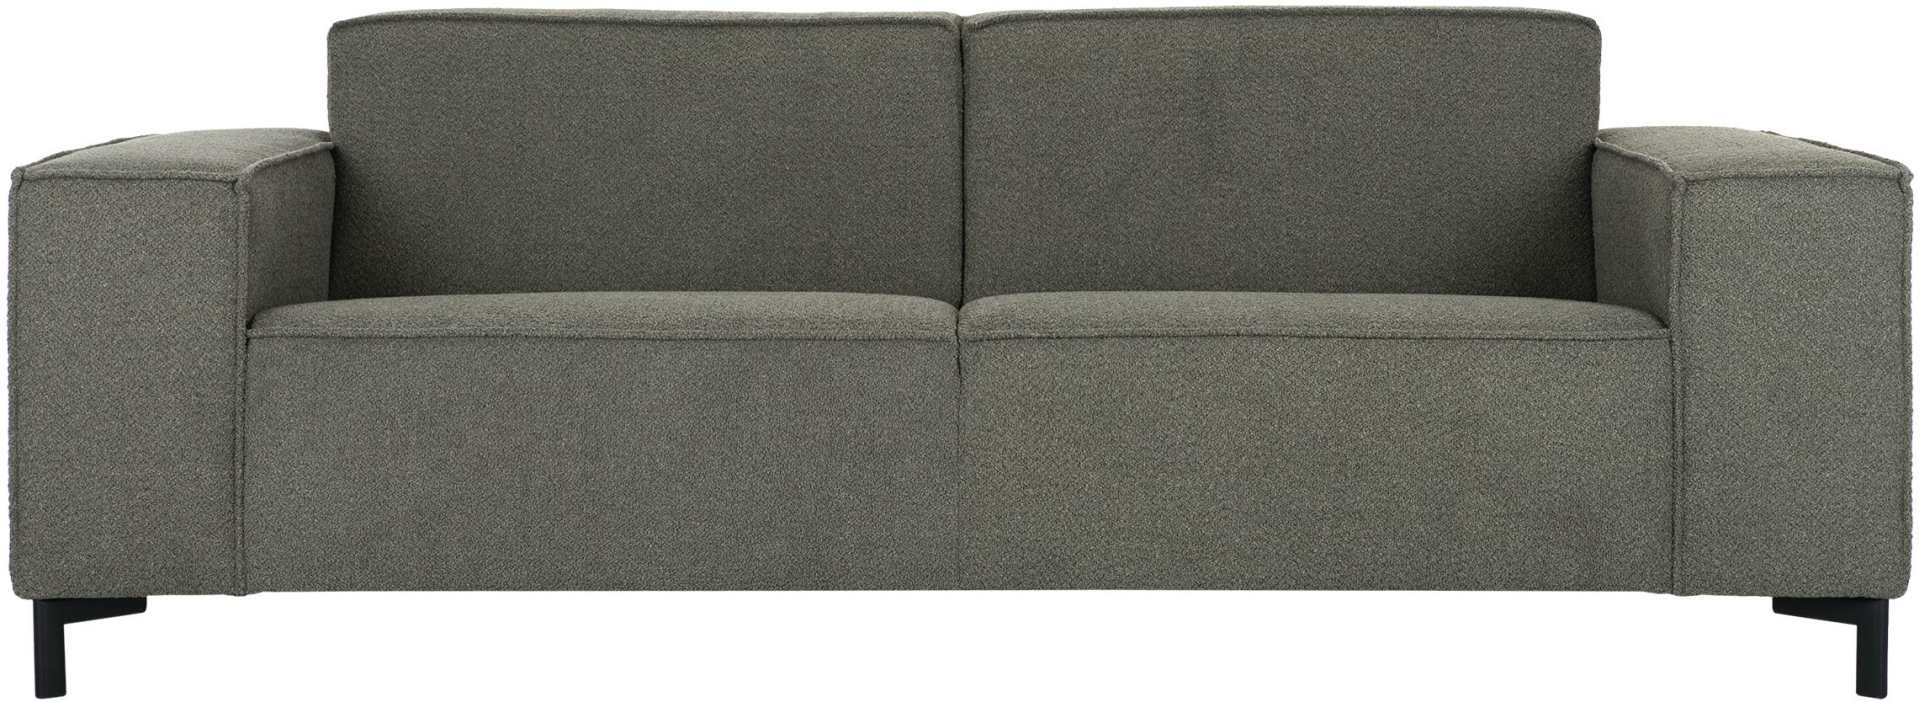 Das 3 Sitzer Sofa Sky überzeugt mit seinem modernem Design. Gefertigt wurde das Sofa aus Teddy Stoff, welcher einen Olive Grünen Farbton hat. Das Gestell ist aus Metall und ist Schwarz.